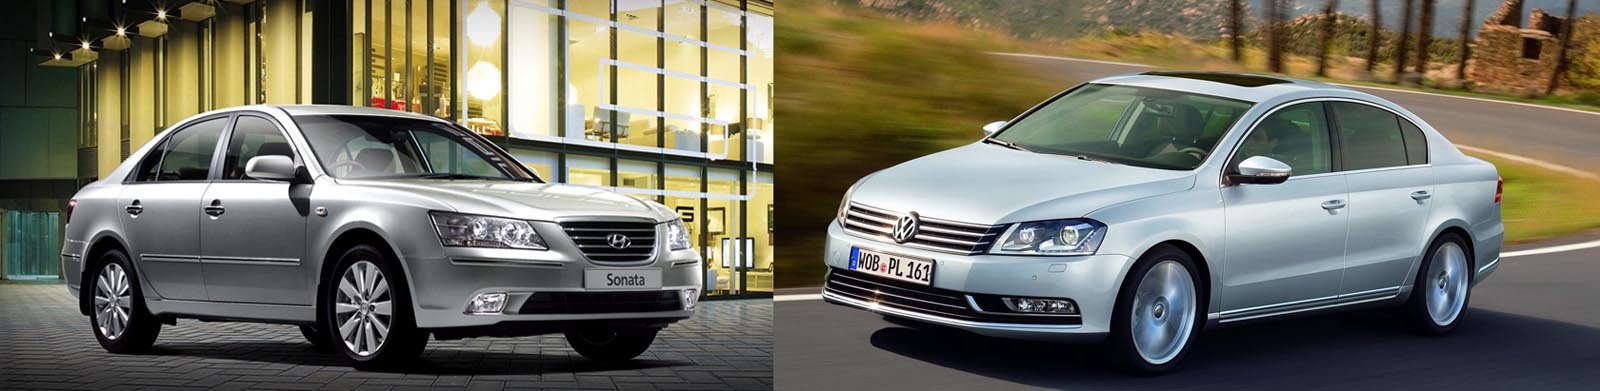 In Europa, Volkswagen Passat facelift este concurat, fara succes, de actualul Hyundai Sonata, pe cateva piete